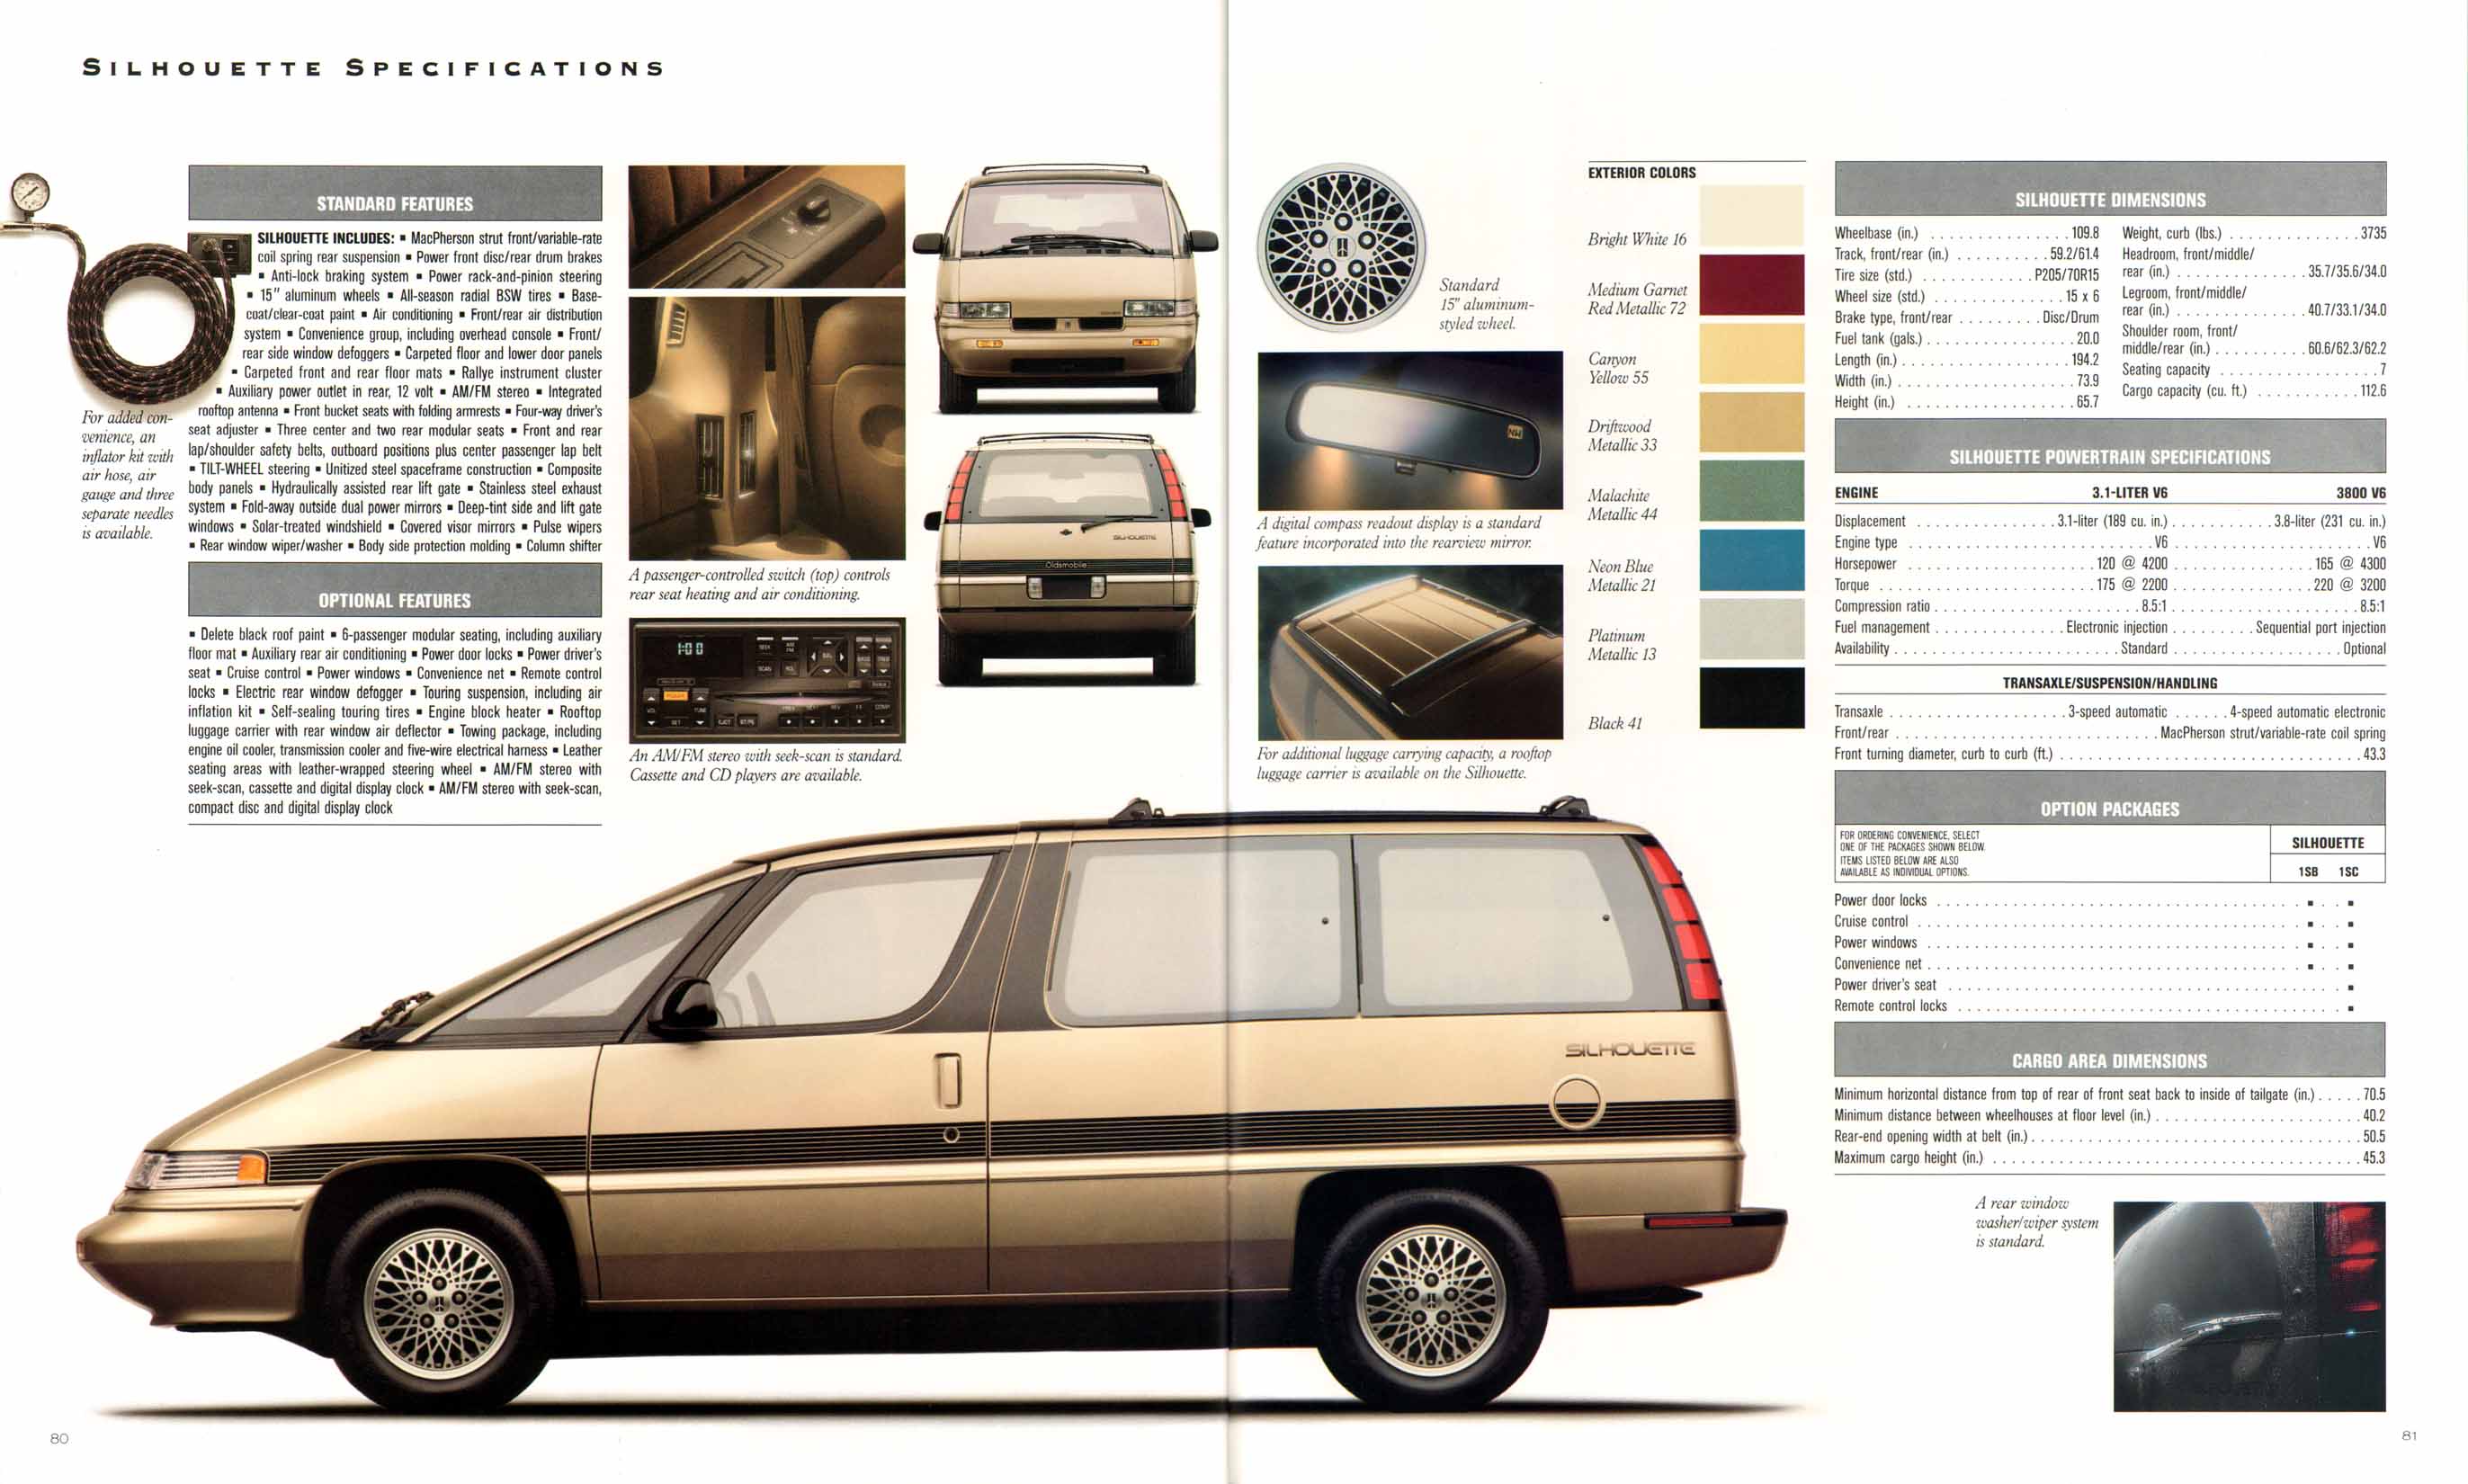 1992_Oldsmobile_Full_Line_Prestige-80-81